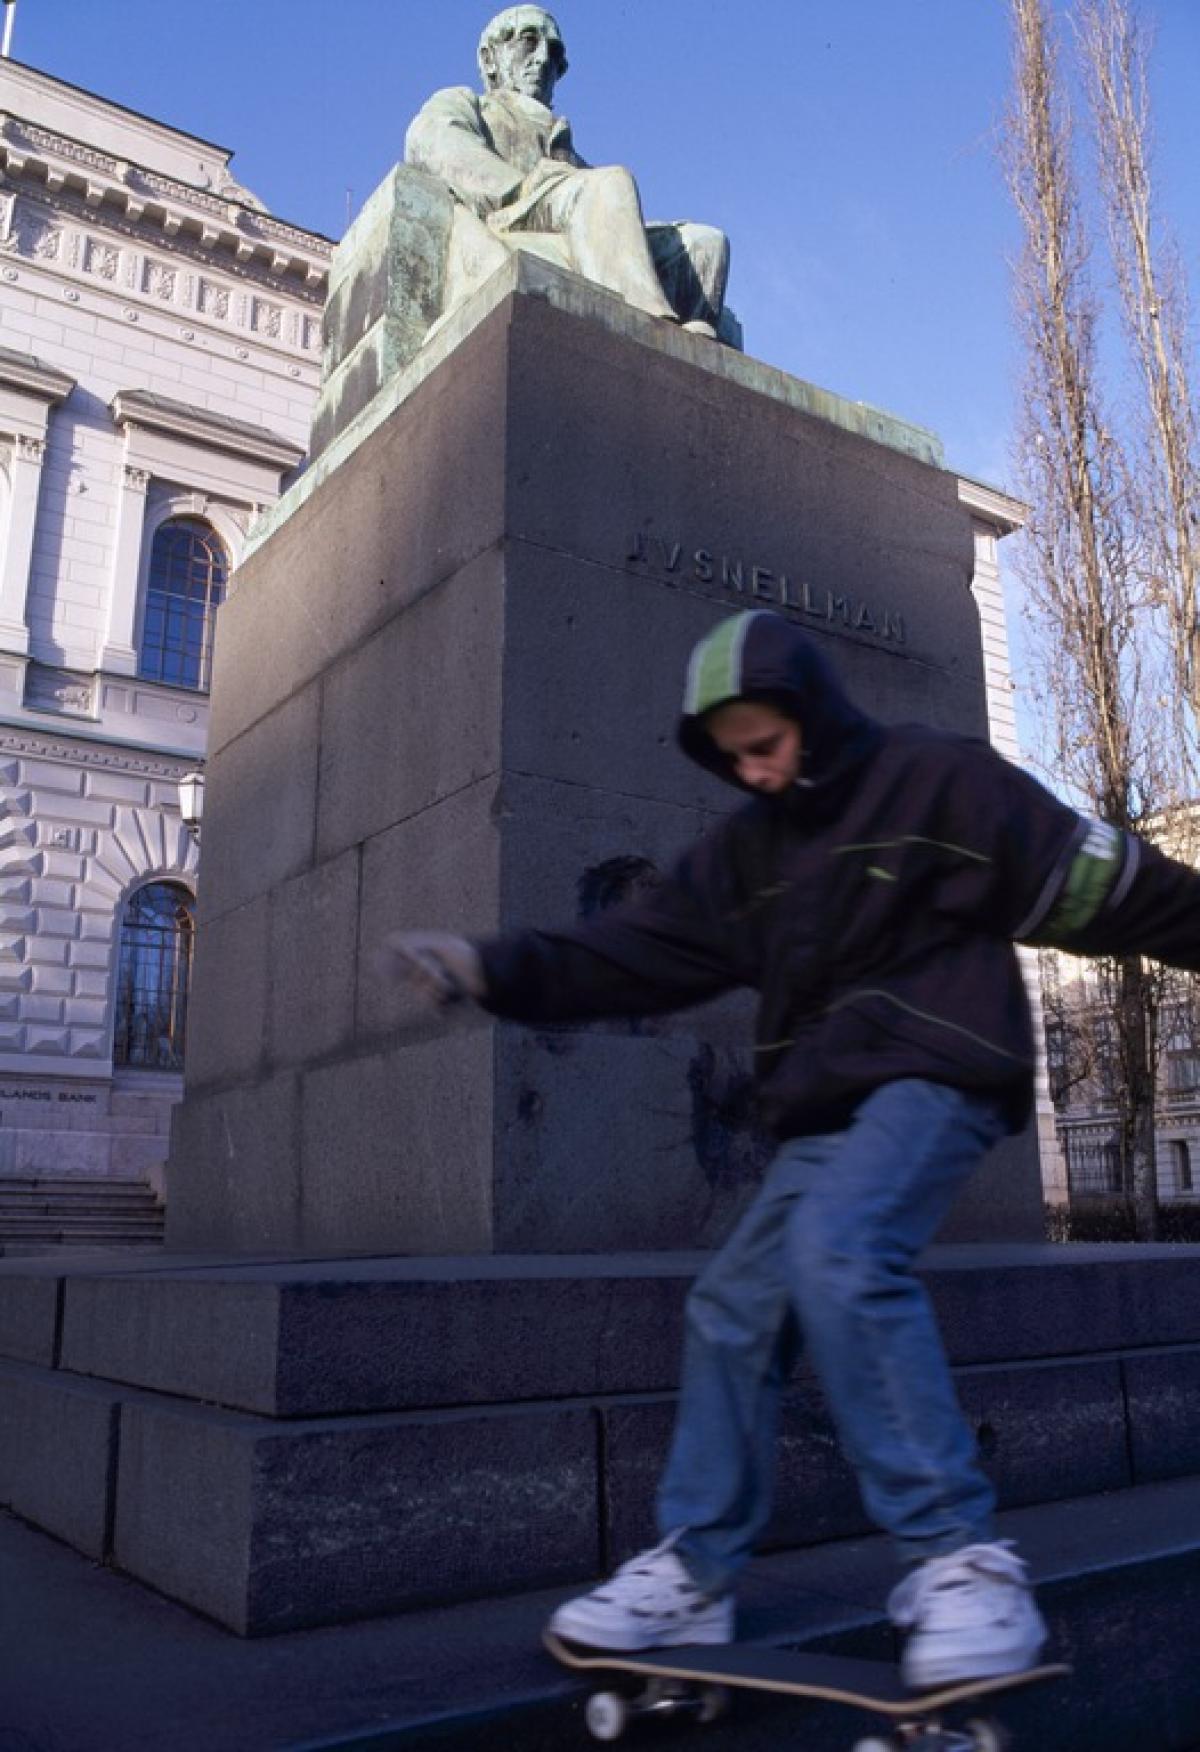 Nuori poika rullalautailee Snellmanin patsaan juurella Suomen pankin edustalla. Kuvaaja: Sakari Kiuru / Helsingin kaupunginmuseo